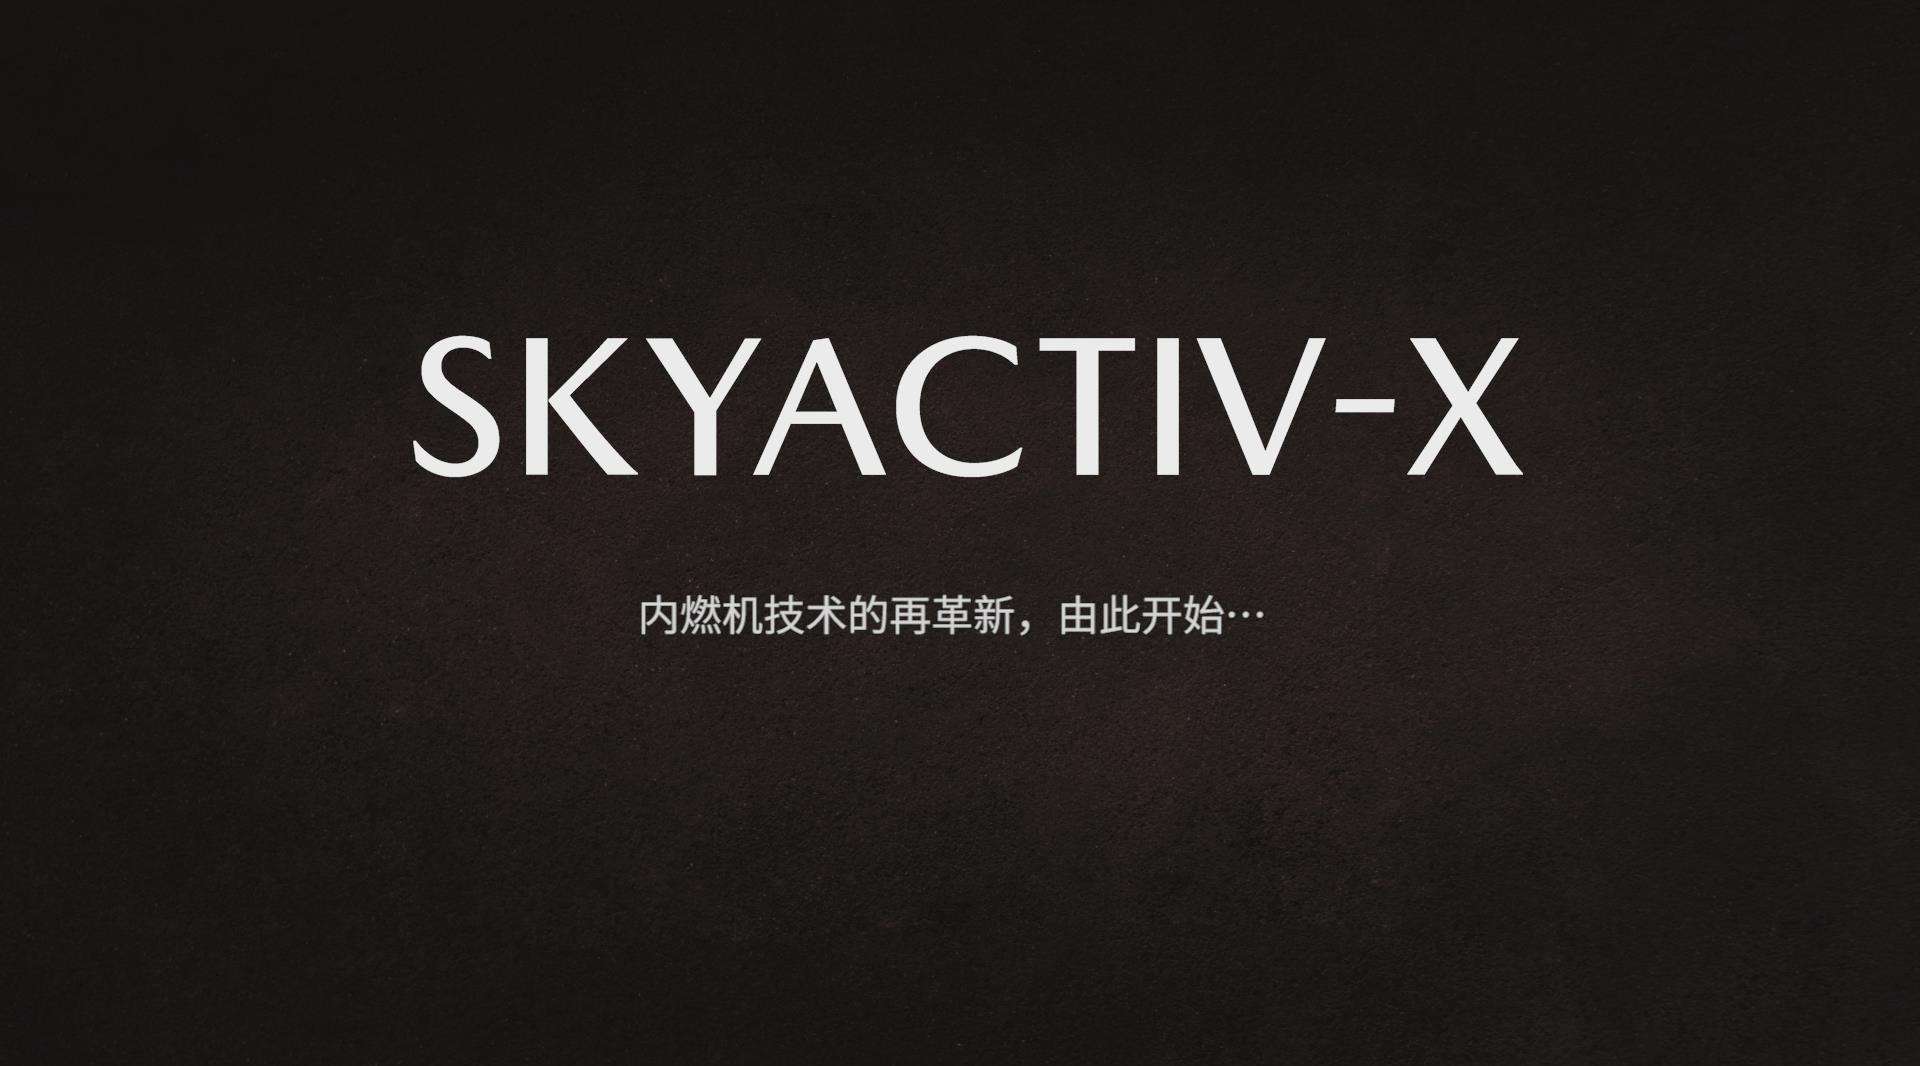 马自达SKYACTIV-X(创驰蓝天-X发动机)技术讲解